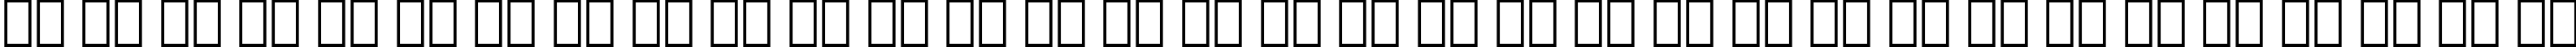 Пример написания русского алфавита шрифтом Symbol Proportional BT